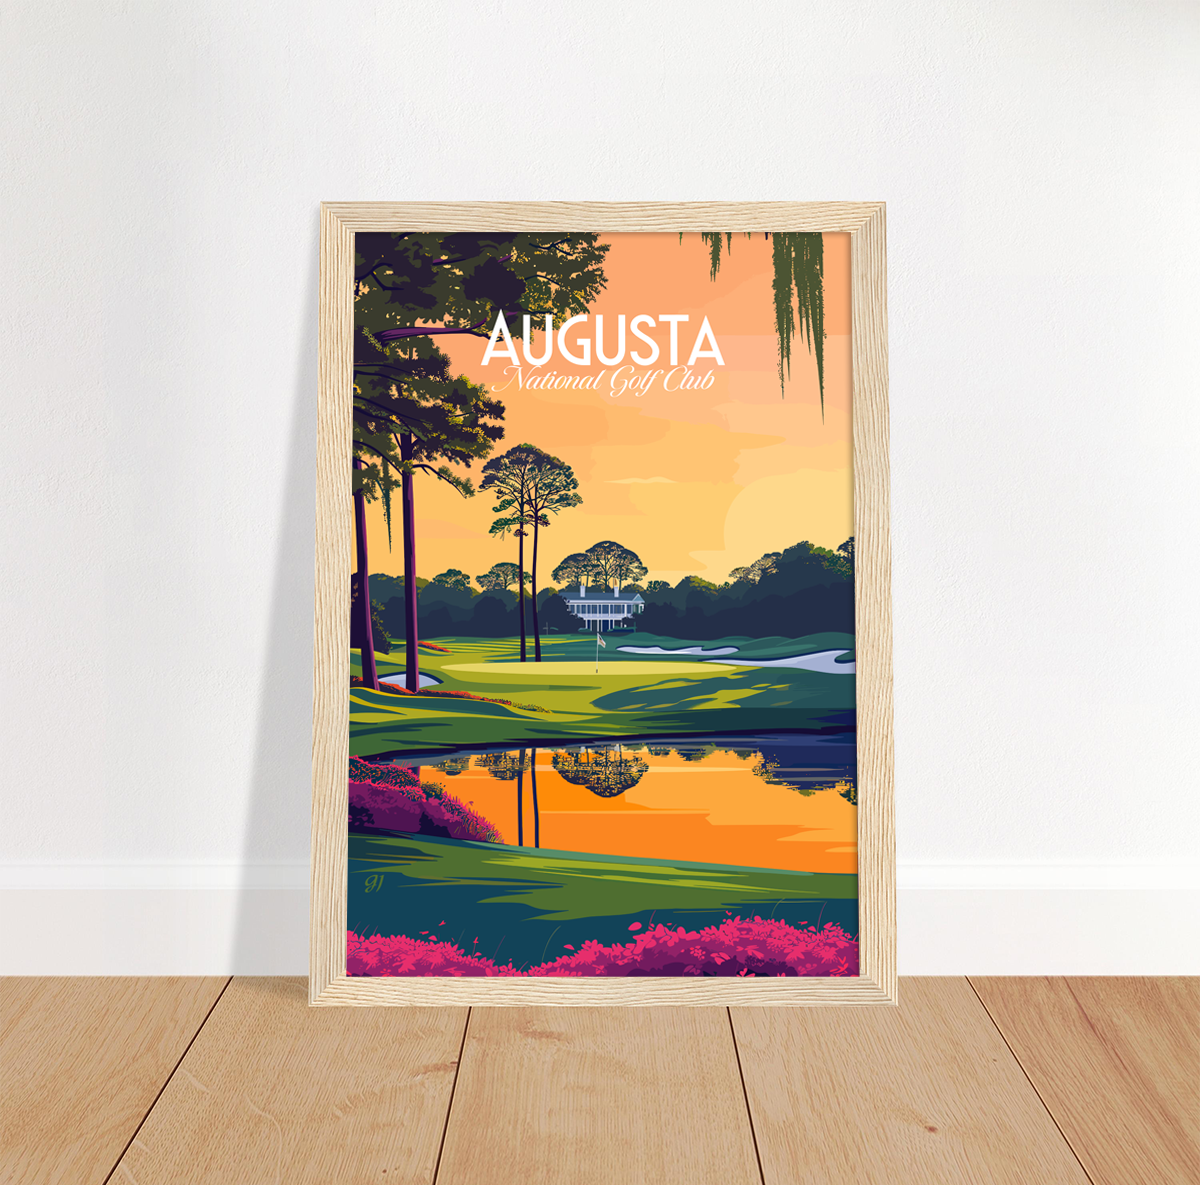 Augusta poster by bon voyage design